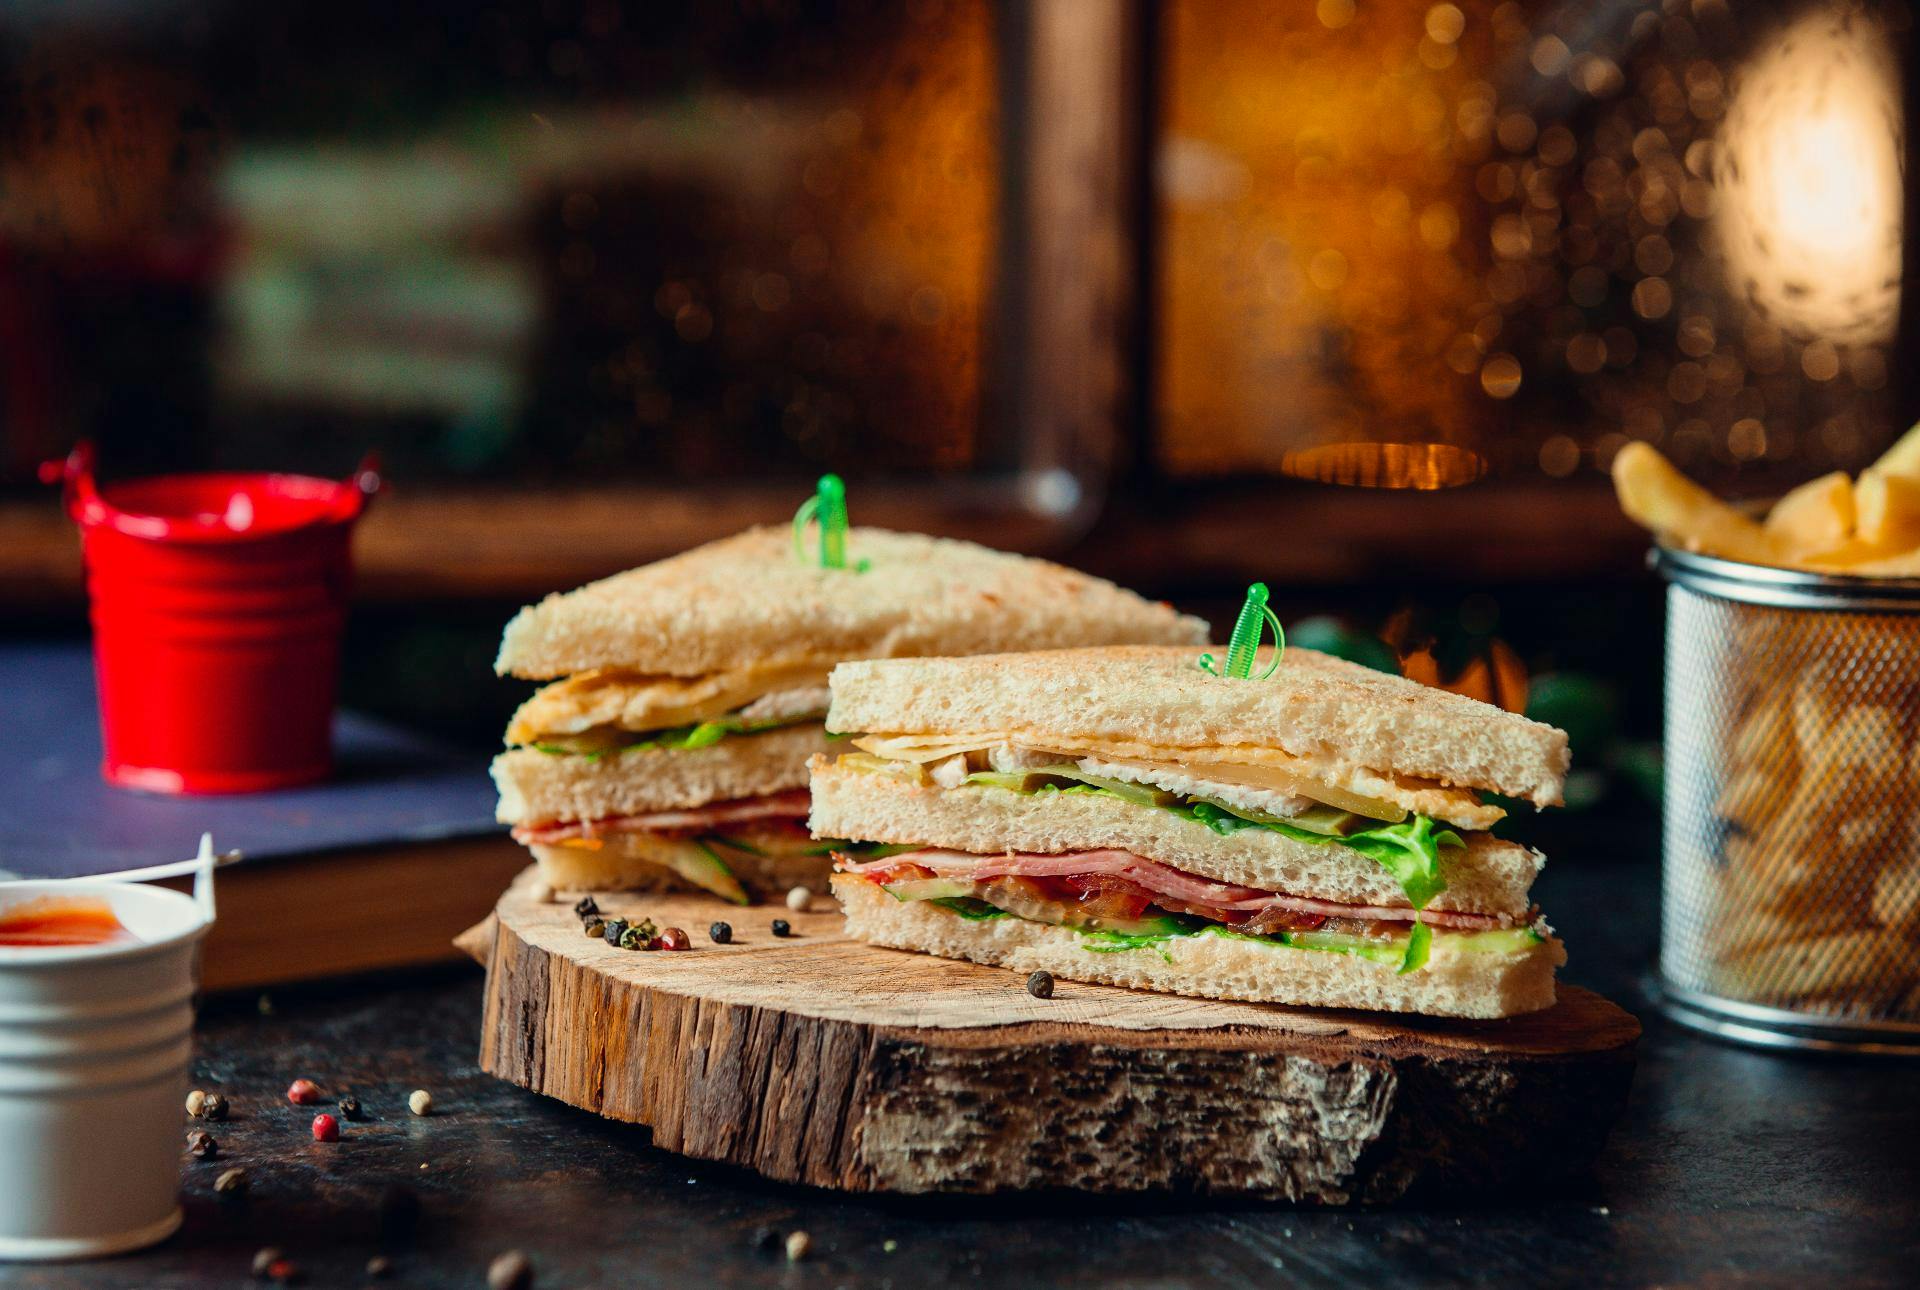 Le club sandwich, une recette facile pour les pique-niques | MOMES